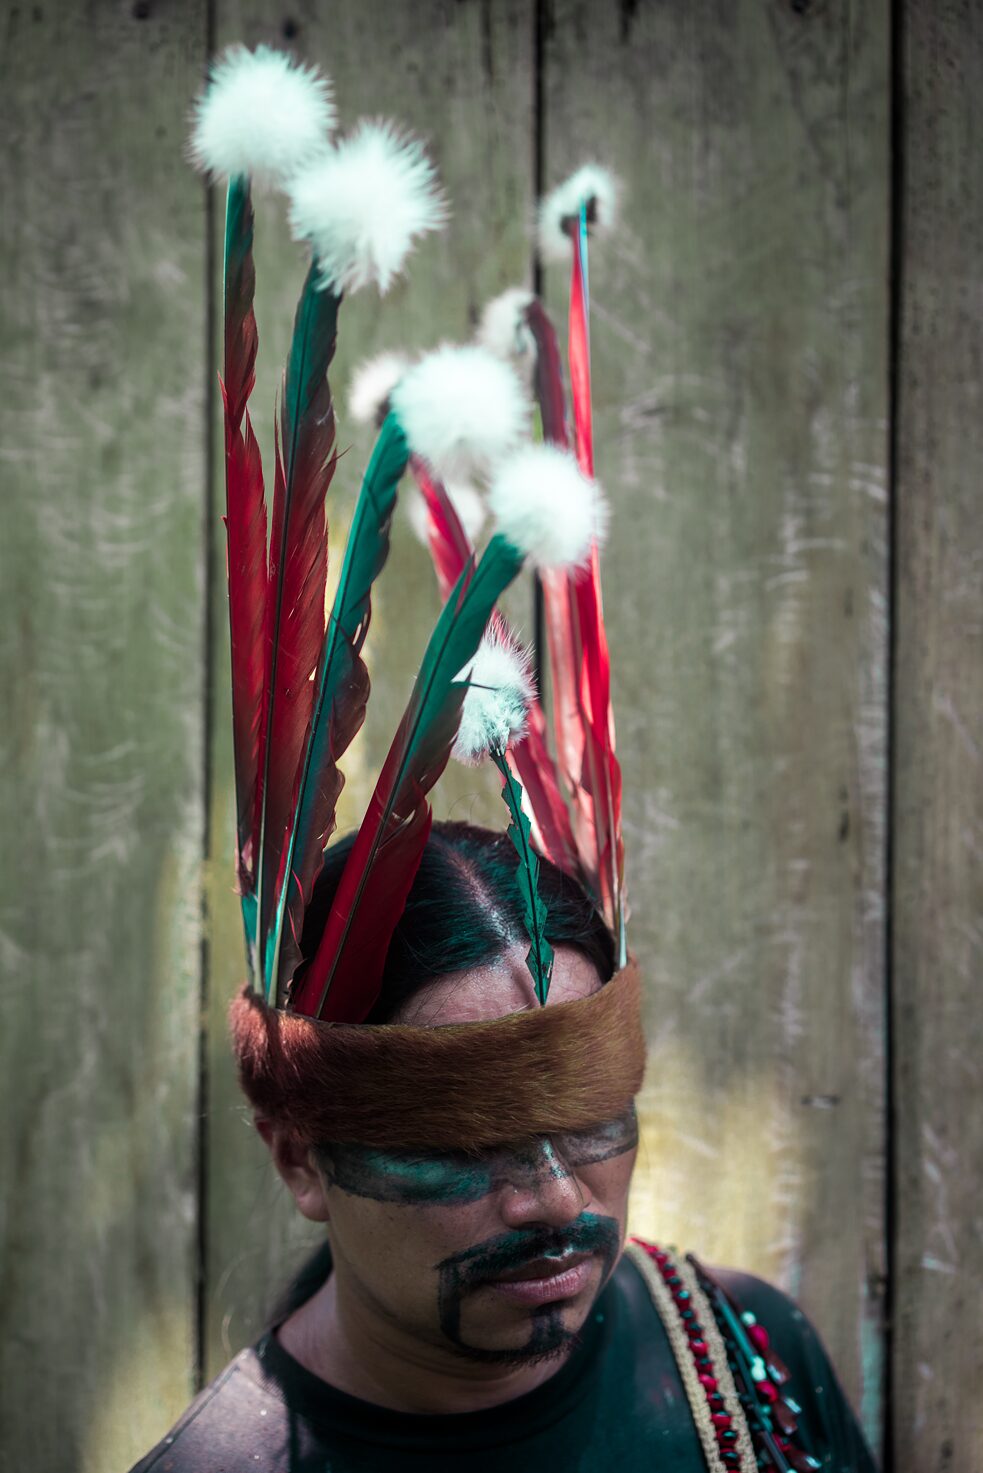 2017. Eriberto Gualinga acomoda seu cocar antes das festividades de Uyantza Raymi. Antes desta celebração, que acontece uma vez a cada três anos, os homens se aprofundam na selva para caçar. Eles tiram da floresta apenas o que é necessário para sua subsistência e aproveitam tudo o que caçam: comem a carne, usam a pele para tambores e roupas e usam a pele e as penas como vestimentas.